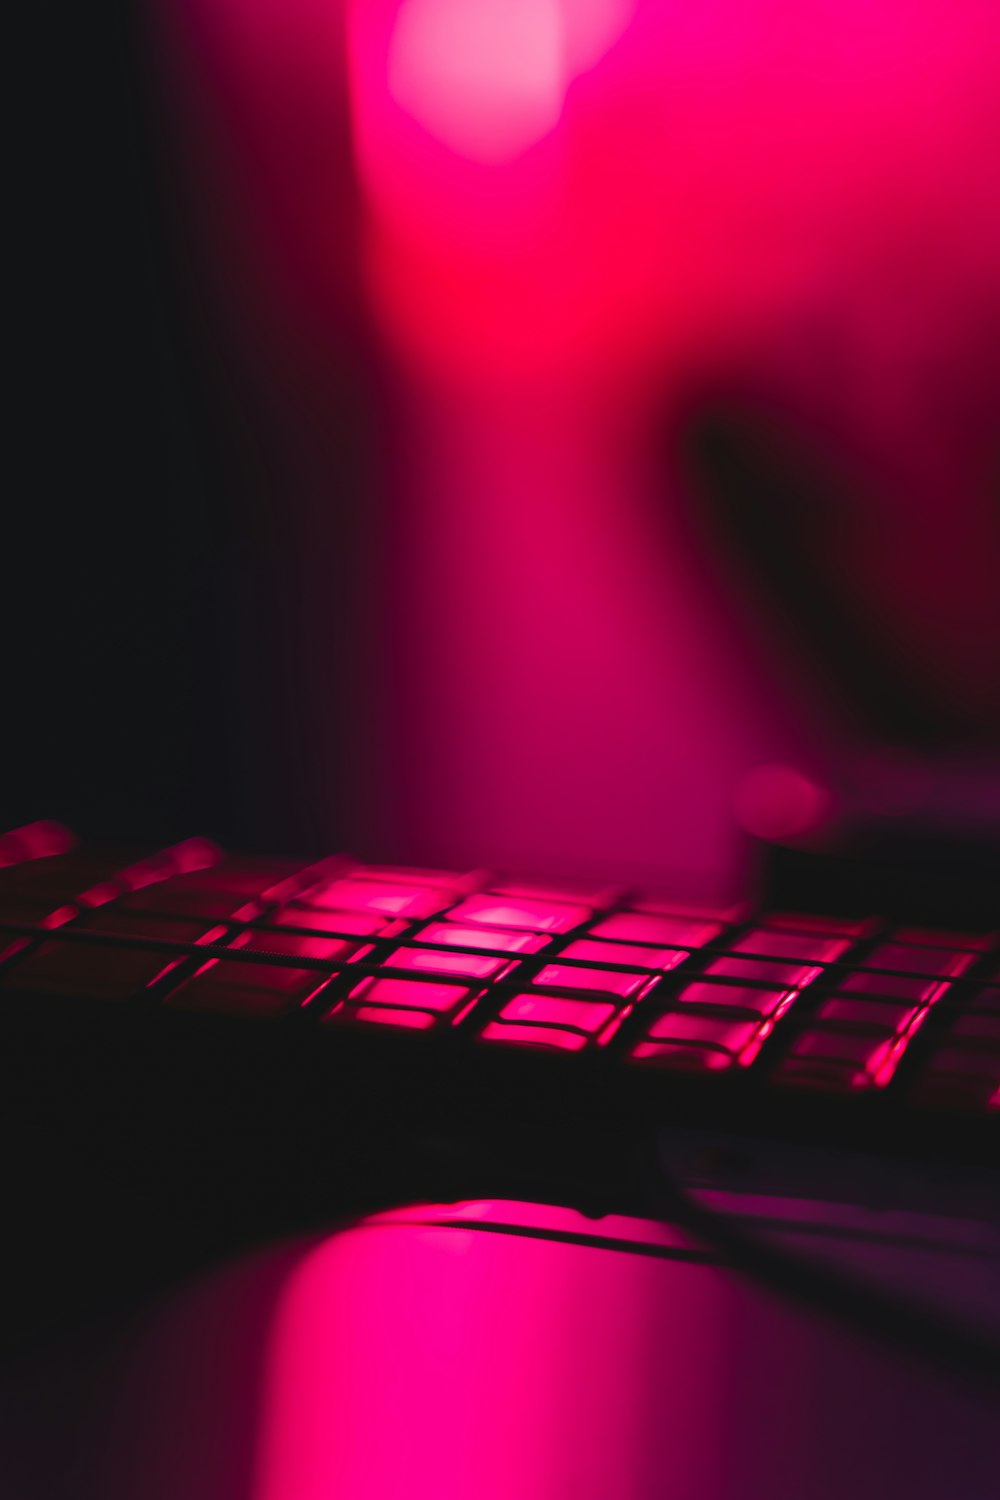 ピンクのテキスタイルに黒いコンピューターキーボード